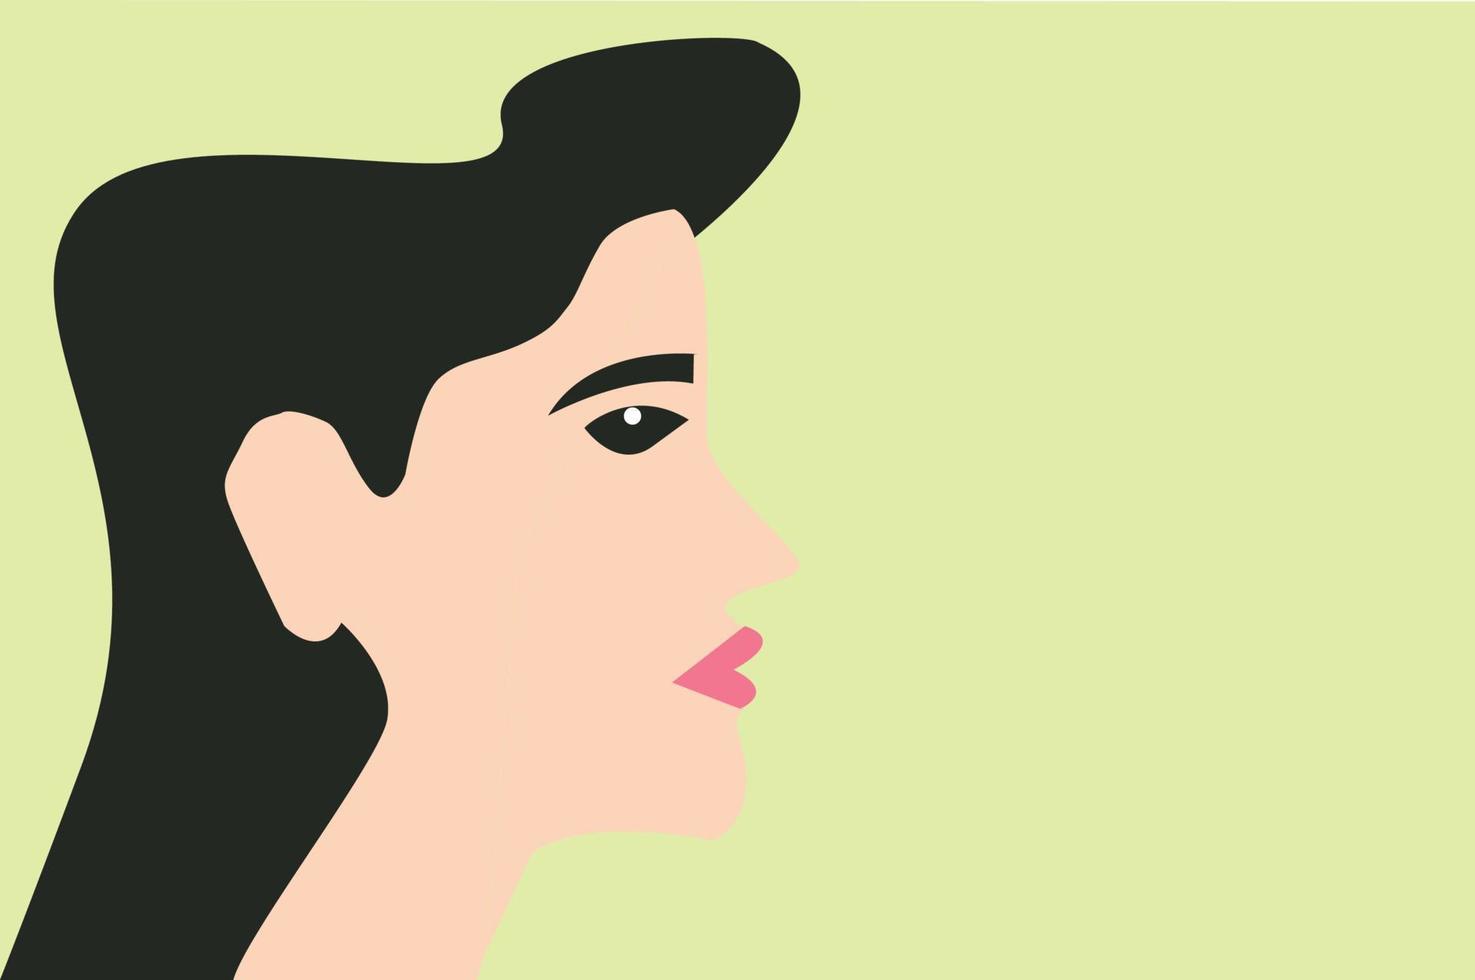 huvudet på en tjej i profil. porträtt av en kvinna med svart hår. avatarer på sociala medier. platt vektor illustration